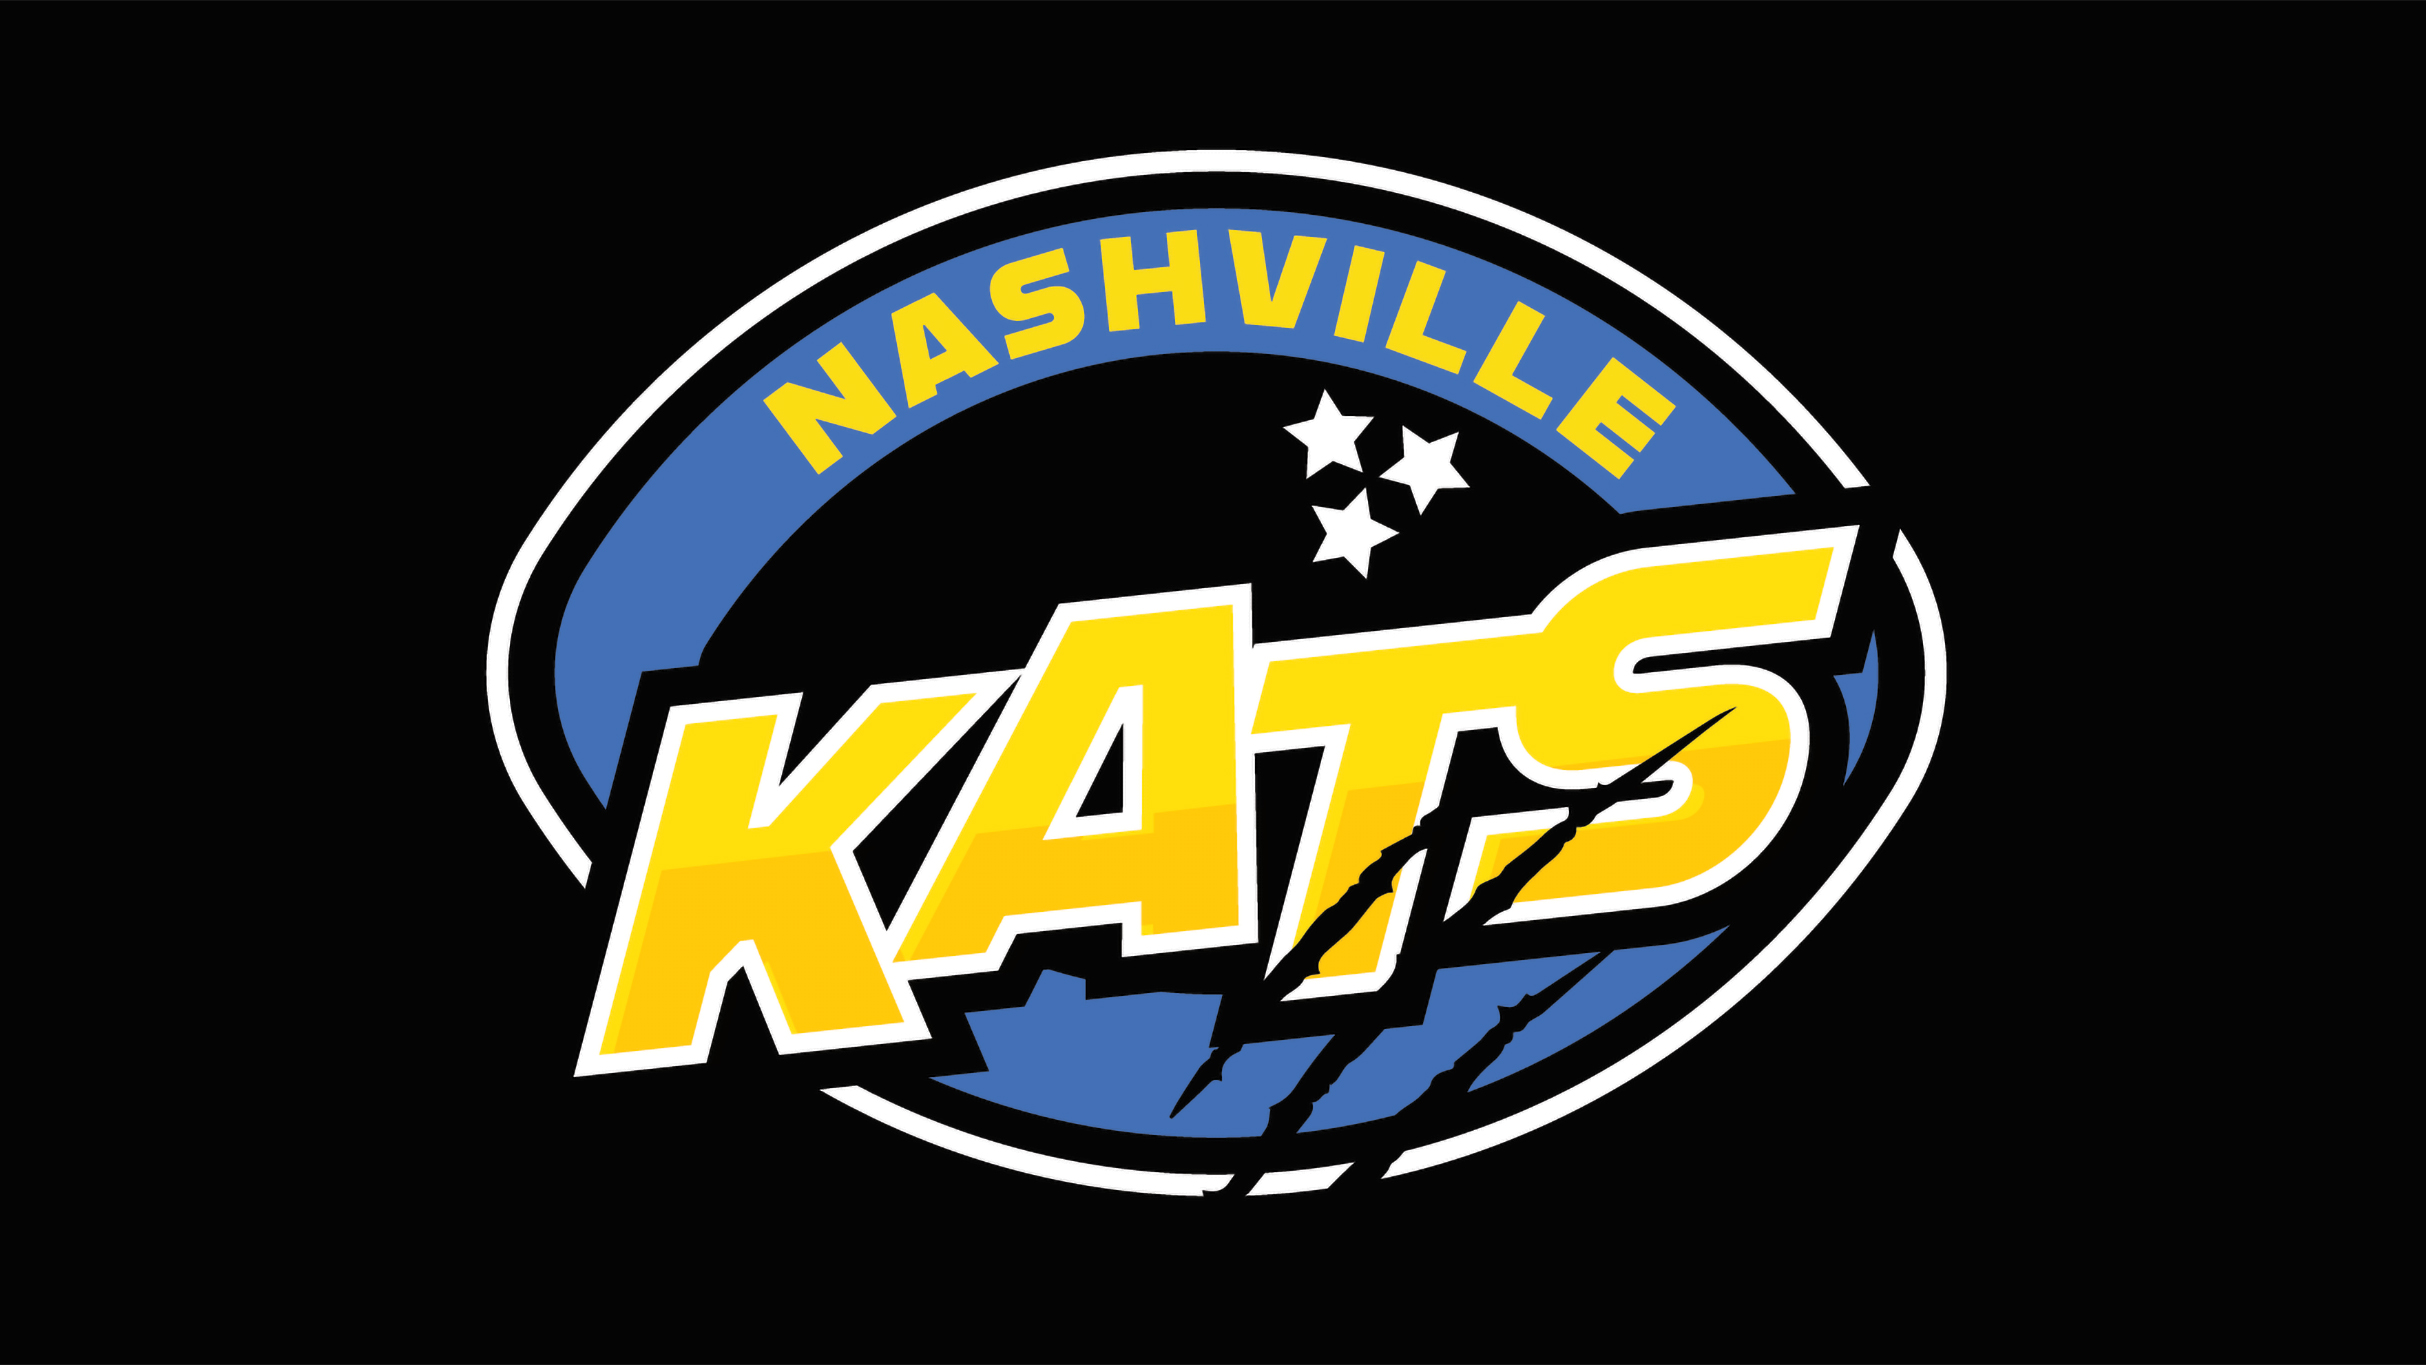 Nashville Kats v Wichita Regulators